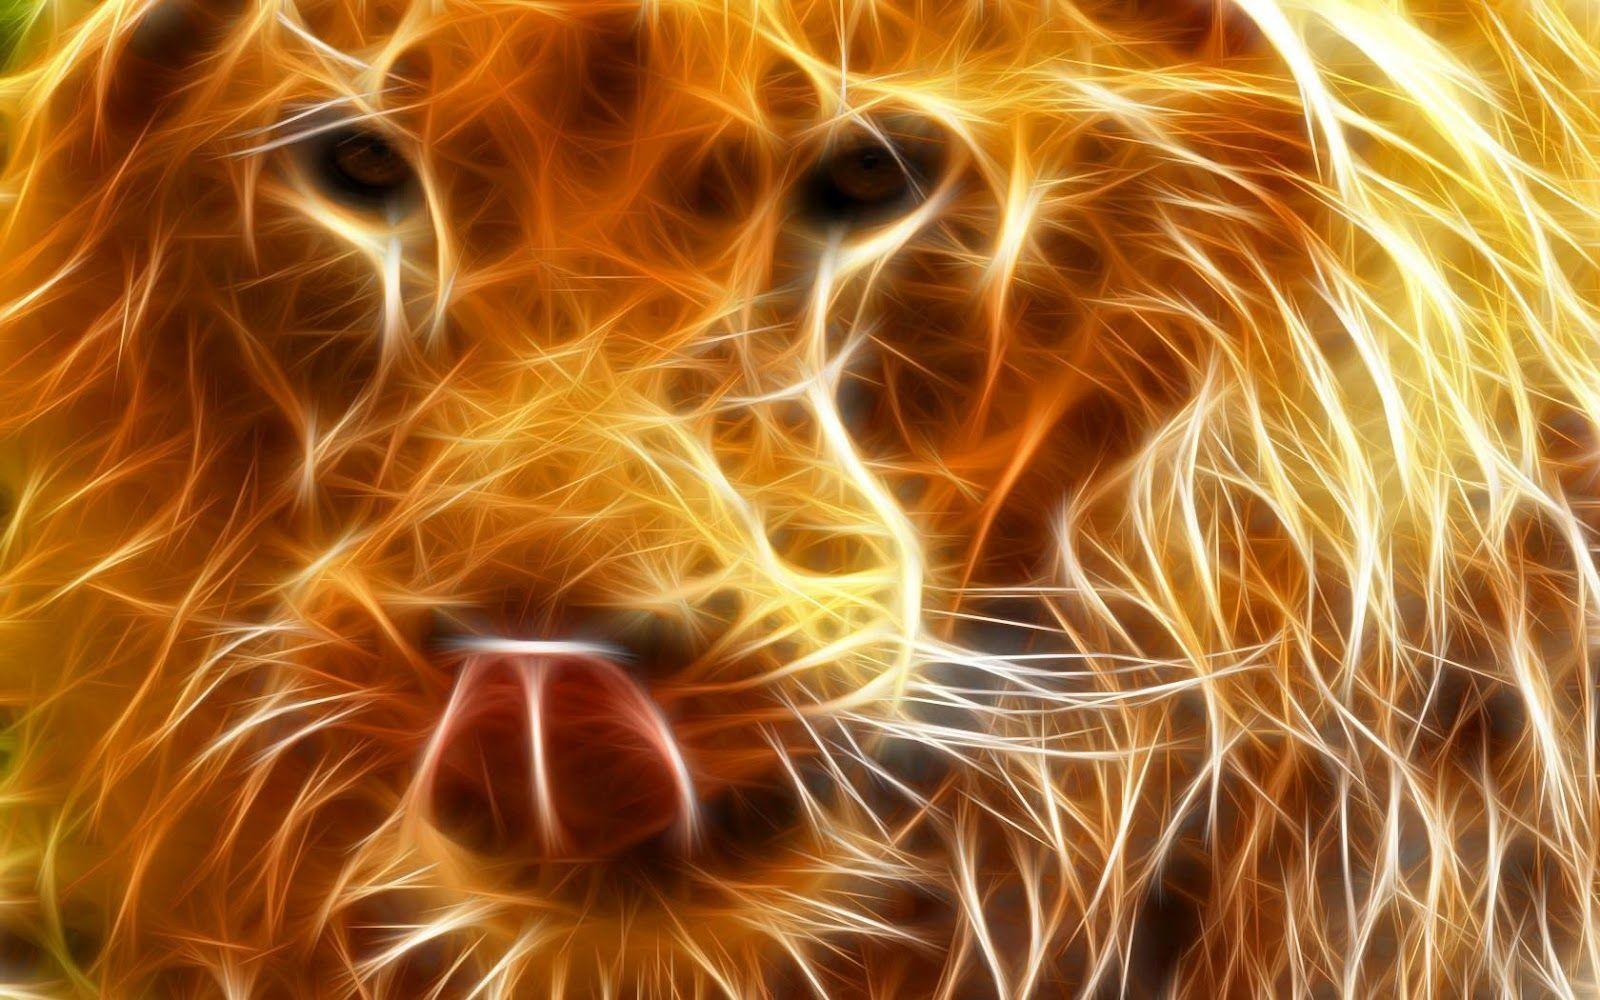 fiery lion